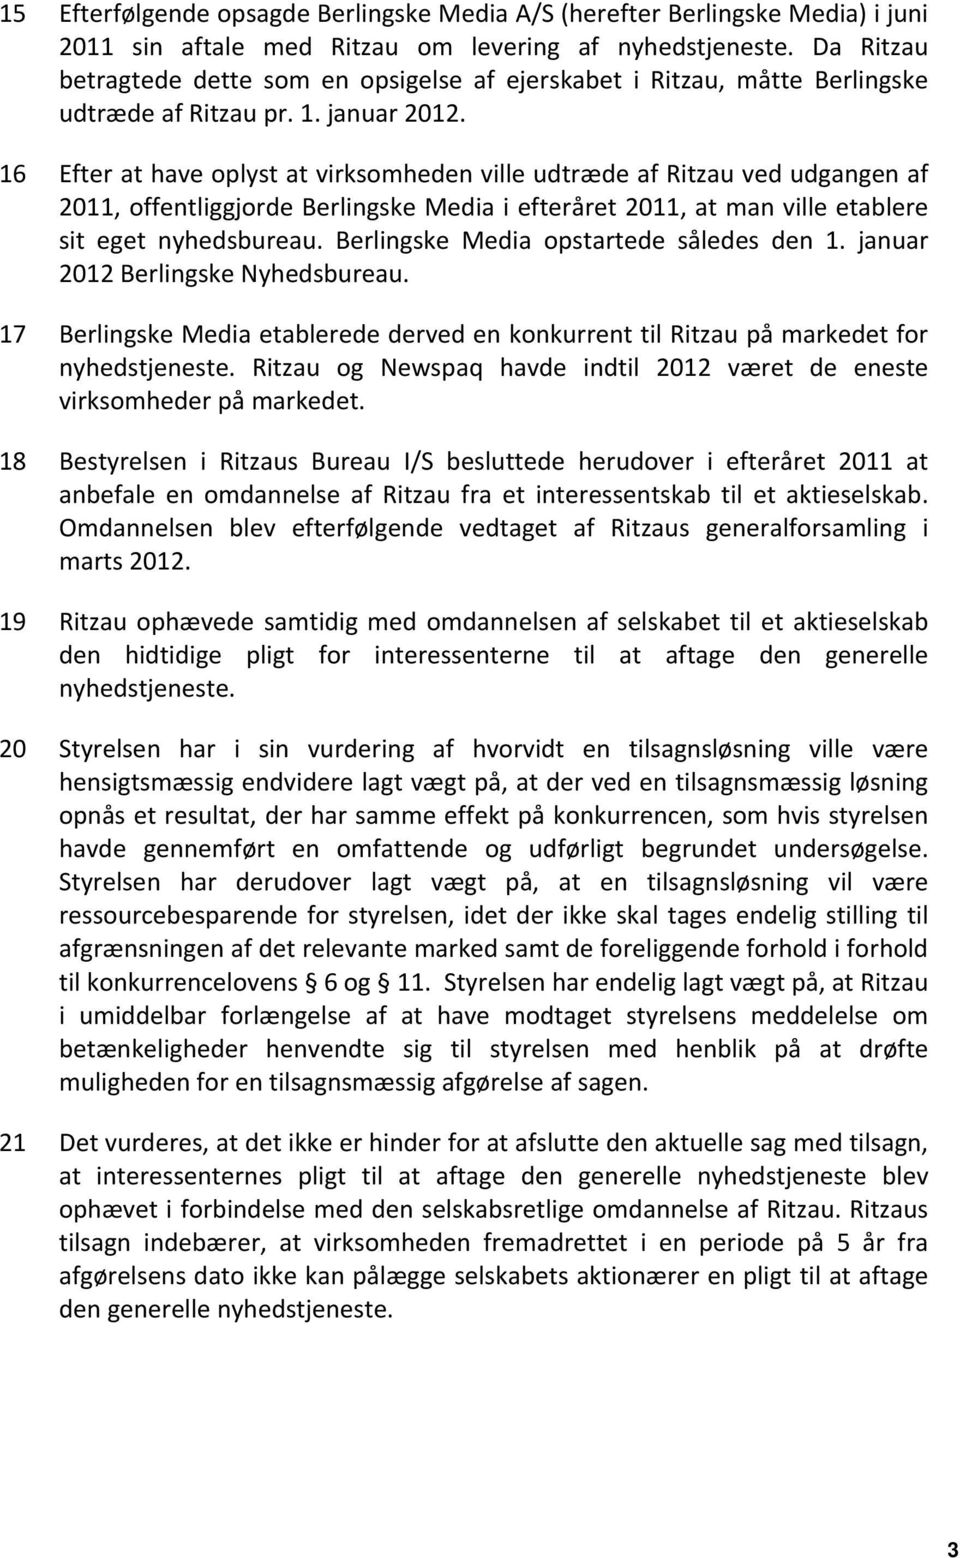 16 Efter at have oplyst at virksomheden ville udtræde af Ritzau ved udgangen af 2011, offentliggjorde Berlingske Media i efteråret 2011, at man ville etablere sit eget nyhedsbureau.